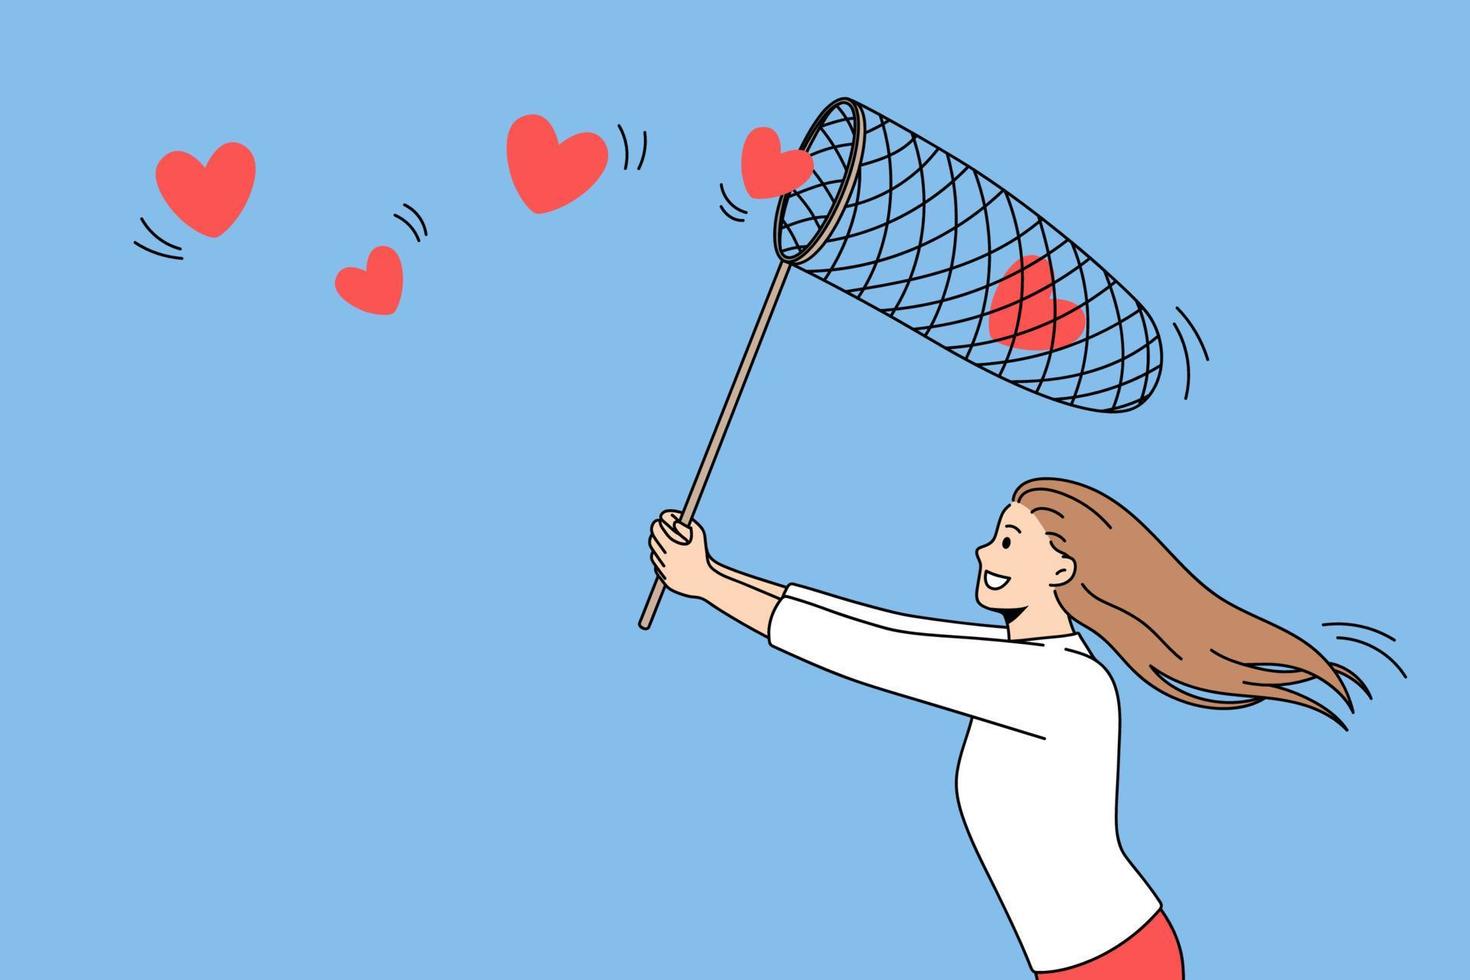 ricerca per amore e romanza concetto. giovane positivo ragazza in esecuzione provando per raccogliere volante rosso cuori nel netto al di sopra di blu aria sfondo vettore illustrazione